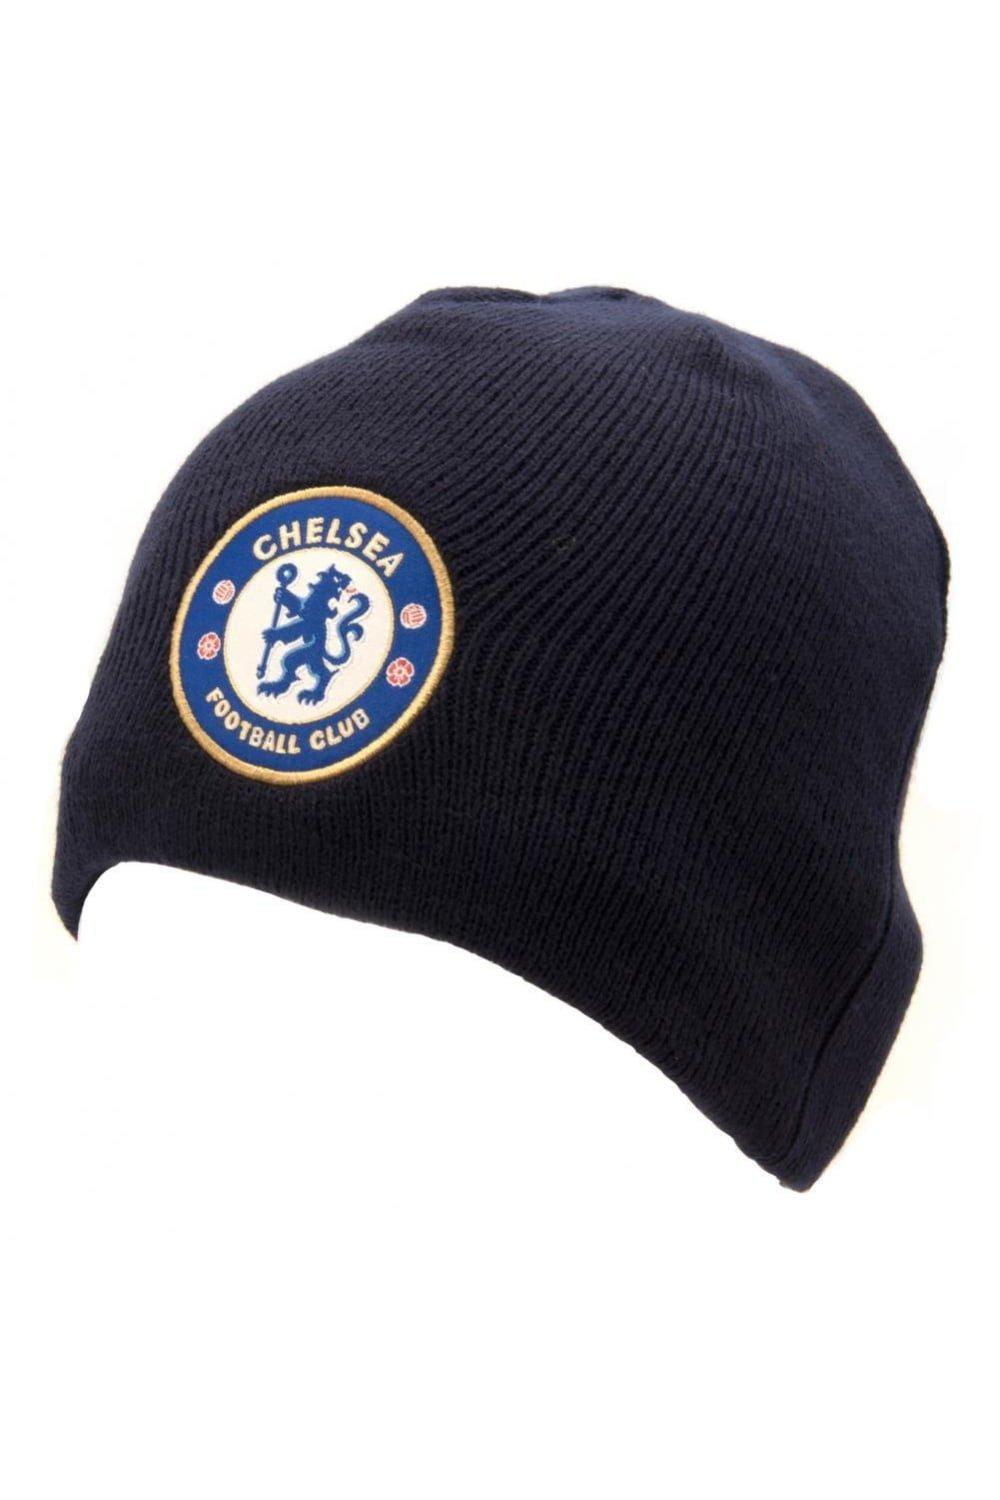 Официальная вязаная шапка Chelsea FC, темно-синий шапка nike chelsea fc